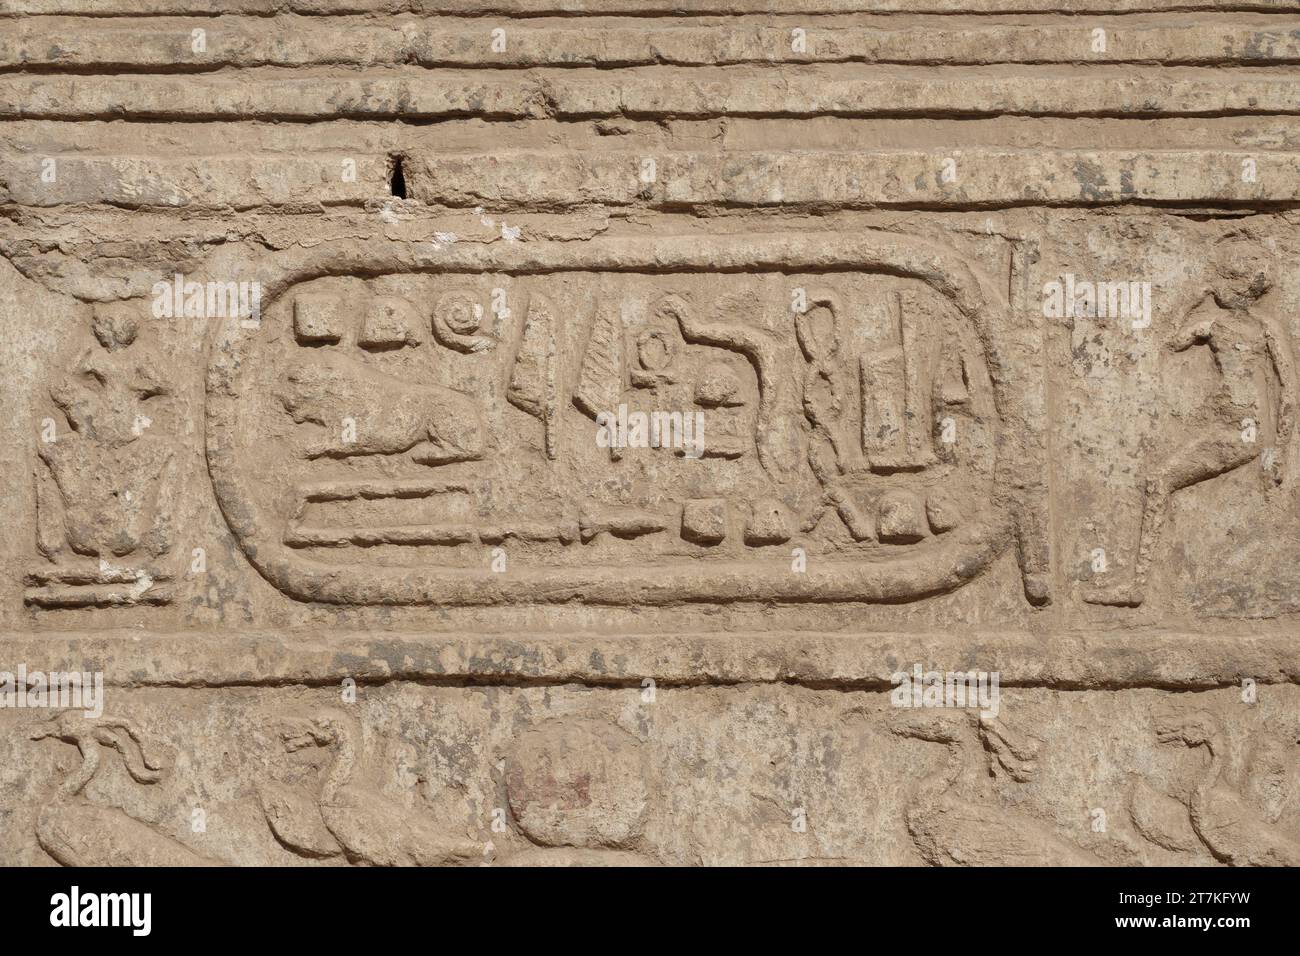 Le temple ptoléméen d'Athribis, également connu sous le nom de Wanina, près d'Akhmim, gouvernorat de Sohag, Moyen-Égypte Banque D'Images